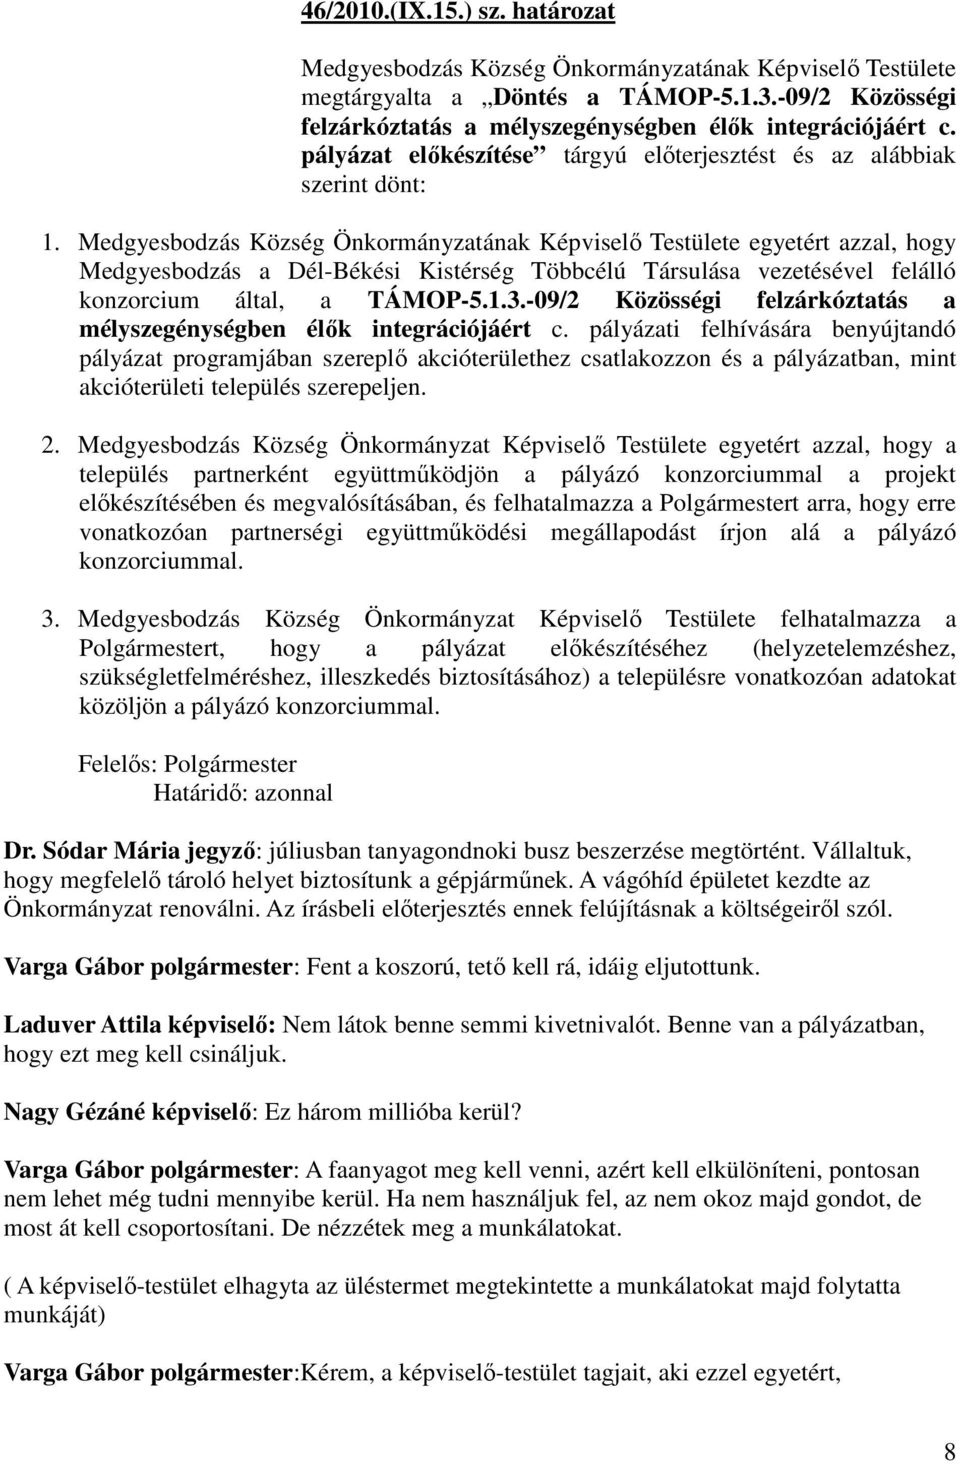 Medgyesbodzás Község Önkormányzatának Képviselı Testülete egyetért azzal, hogy Medgyesbodzás a Dél-Békési Kistérség Többcélú Társulása vezetésével felálló konzorcium által, a TÁMOP-5.1.3.